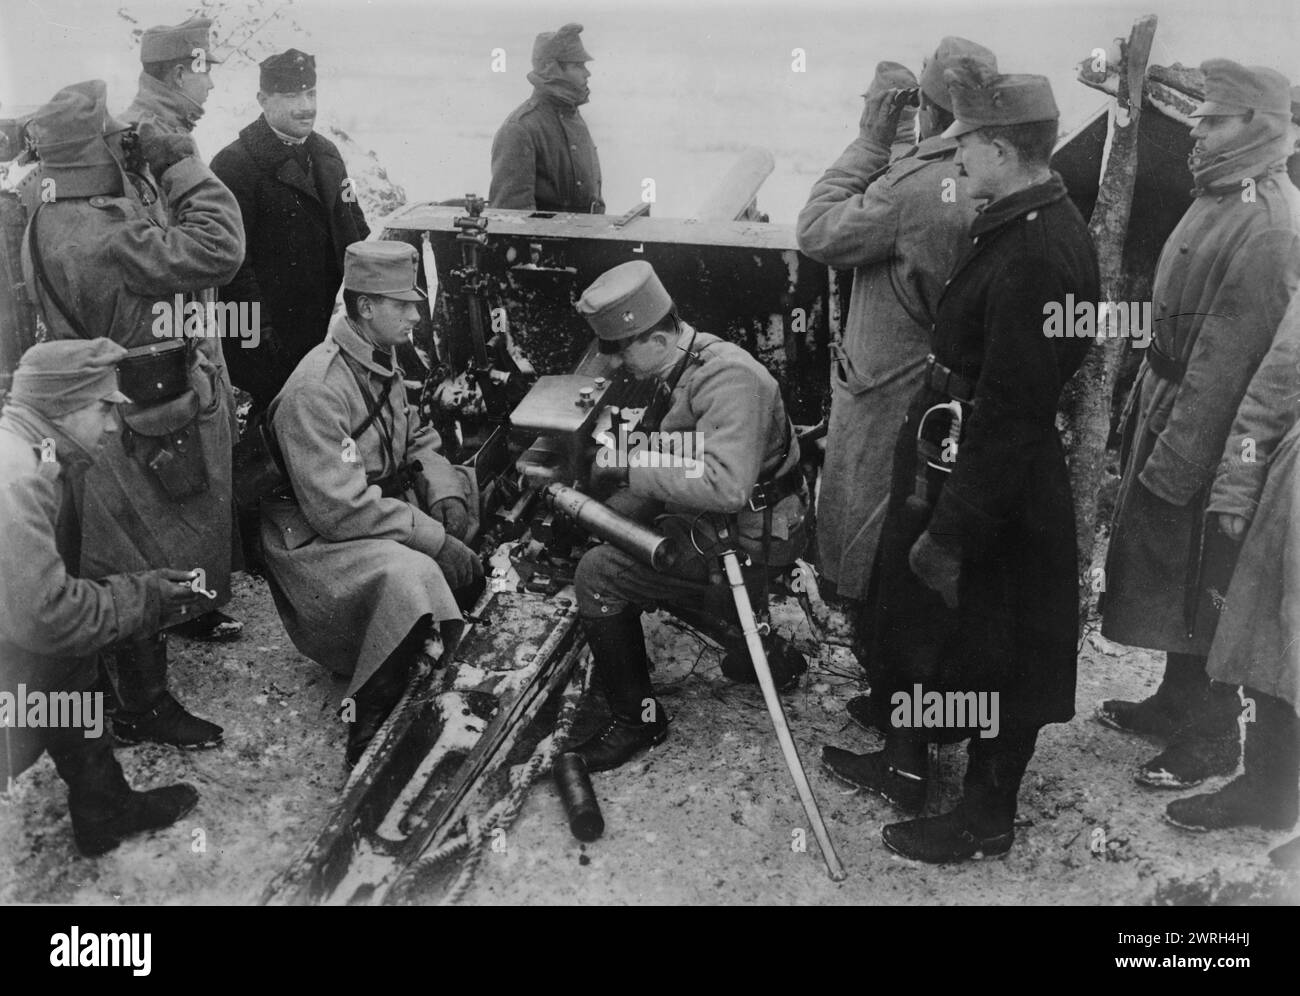 Artiglieria austriaca nella Bukowina, tra il c1914 e il c1915. Soldati austriaci di artiglieria a Bukowina (Bucovina) durante la prima guerra mondiale All'epoca la Bucovina faceva parte dell'Impero austriaco e ora si trova in Romania e Ucraina. Foto Stock